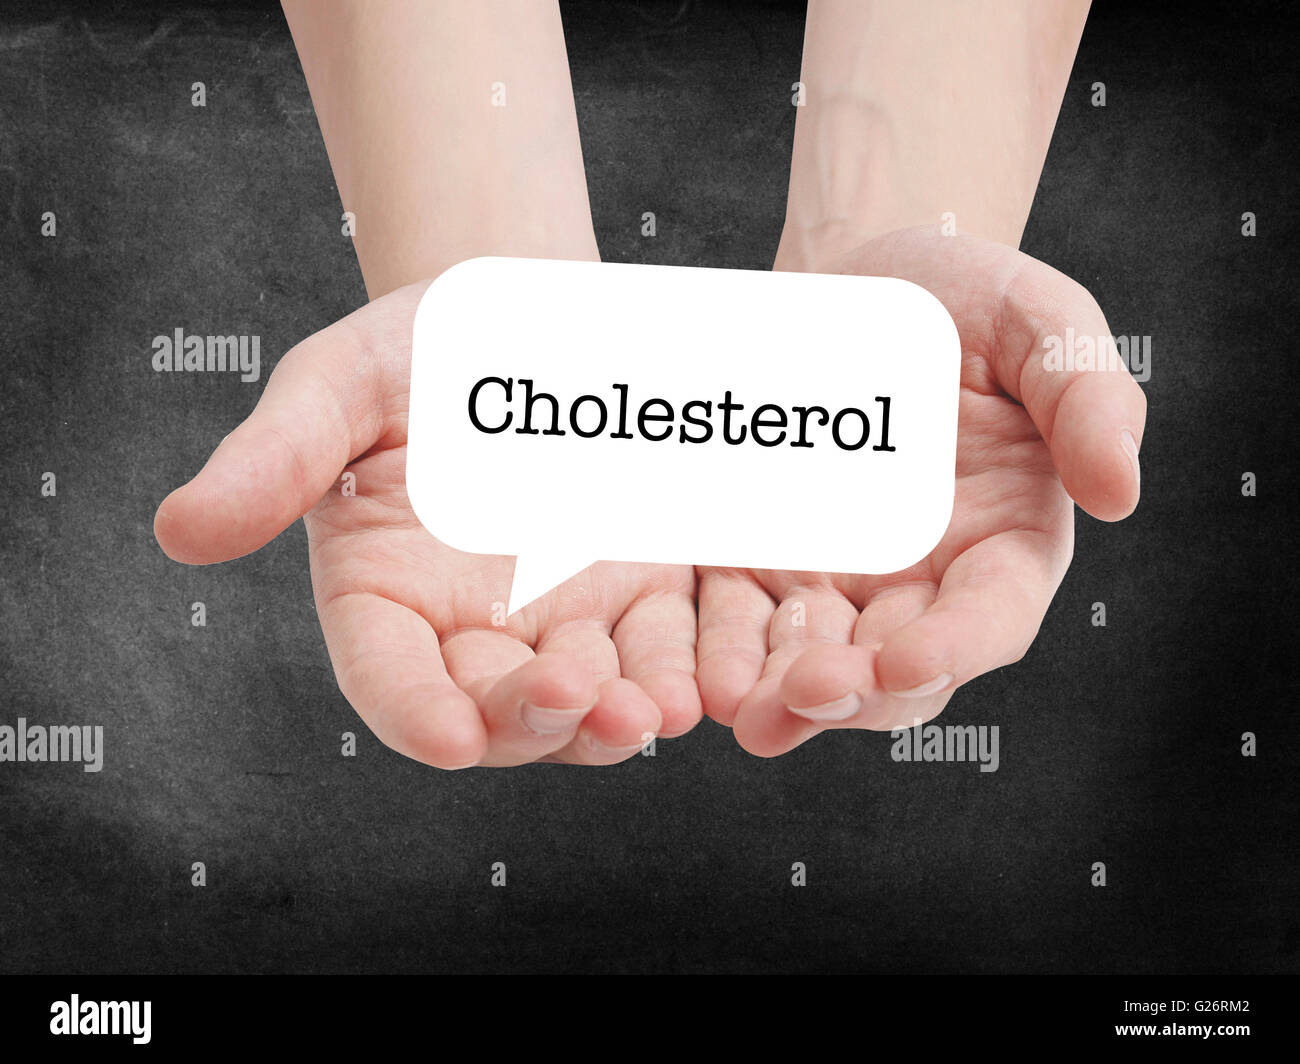 Cholesterol written on a speechbubble Stock Photo